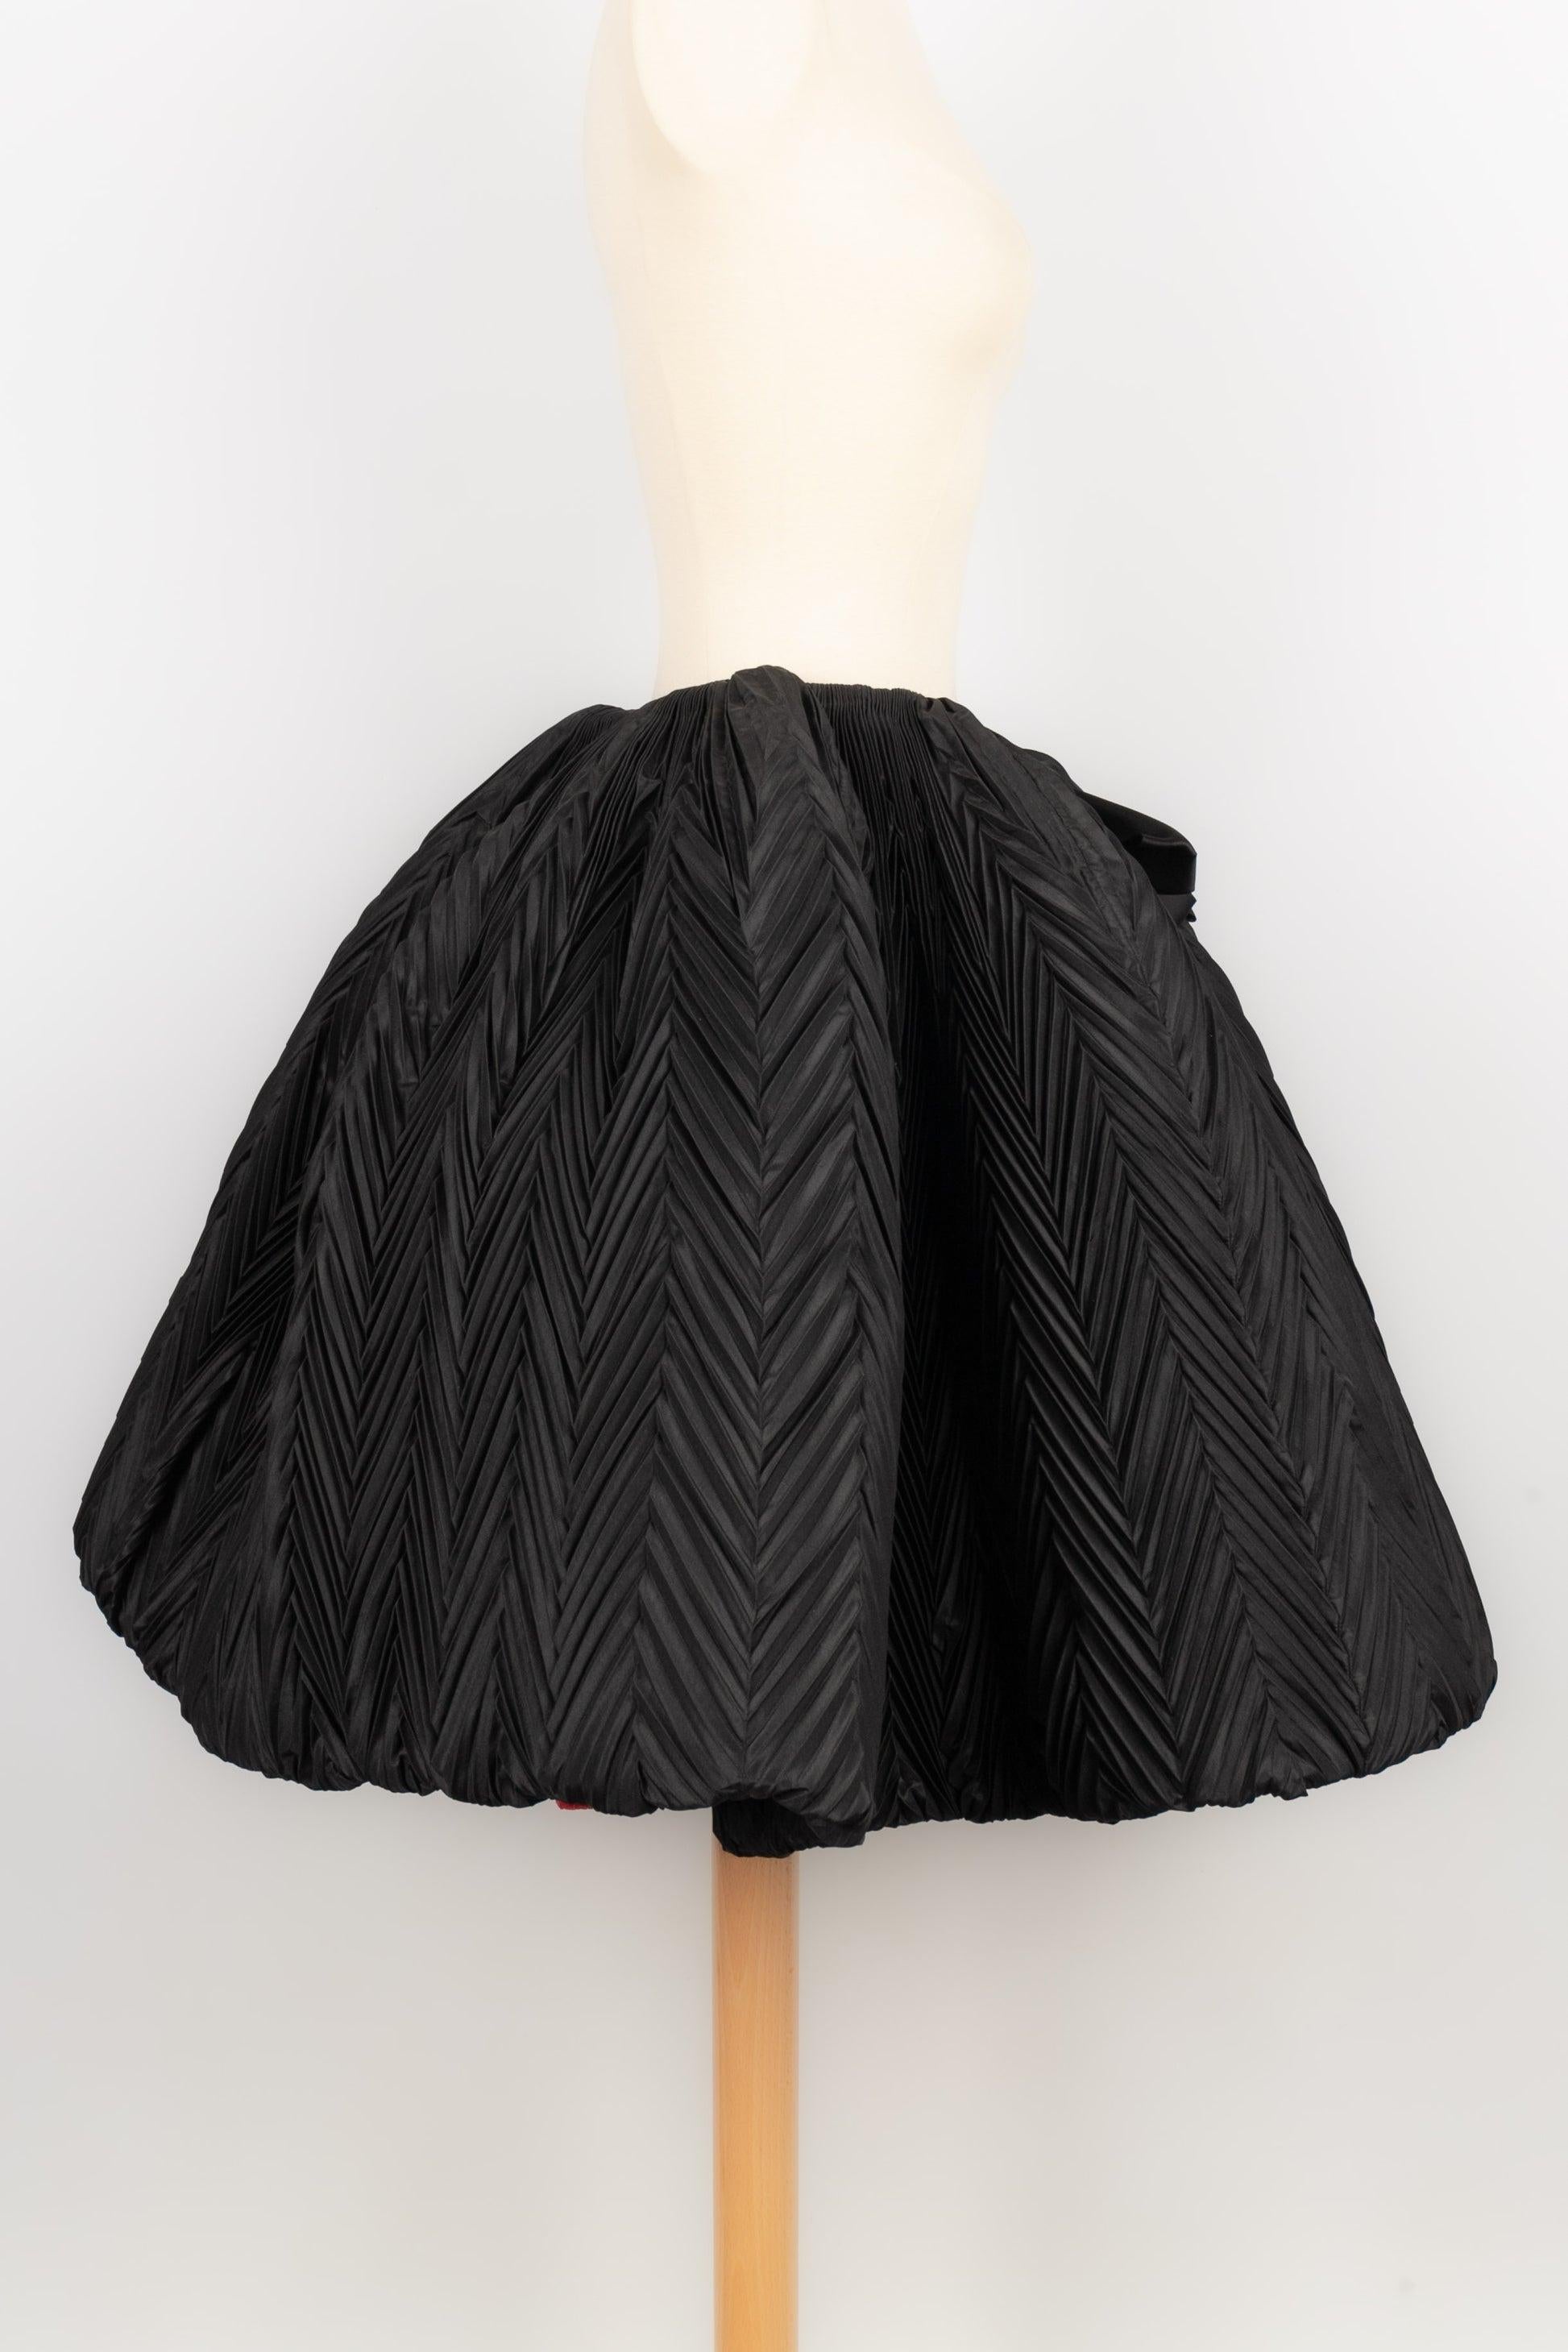 Nina Ricci -Haute Couture jupe circulaire recouverte de taffetas noir avec plis géométriques et impressionnant nœud central. Aucune taille n'est indiquée, il convient à un 36FR.

Informations complémentaires :
Condit : Très bon état.
Dimensions :